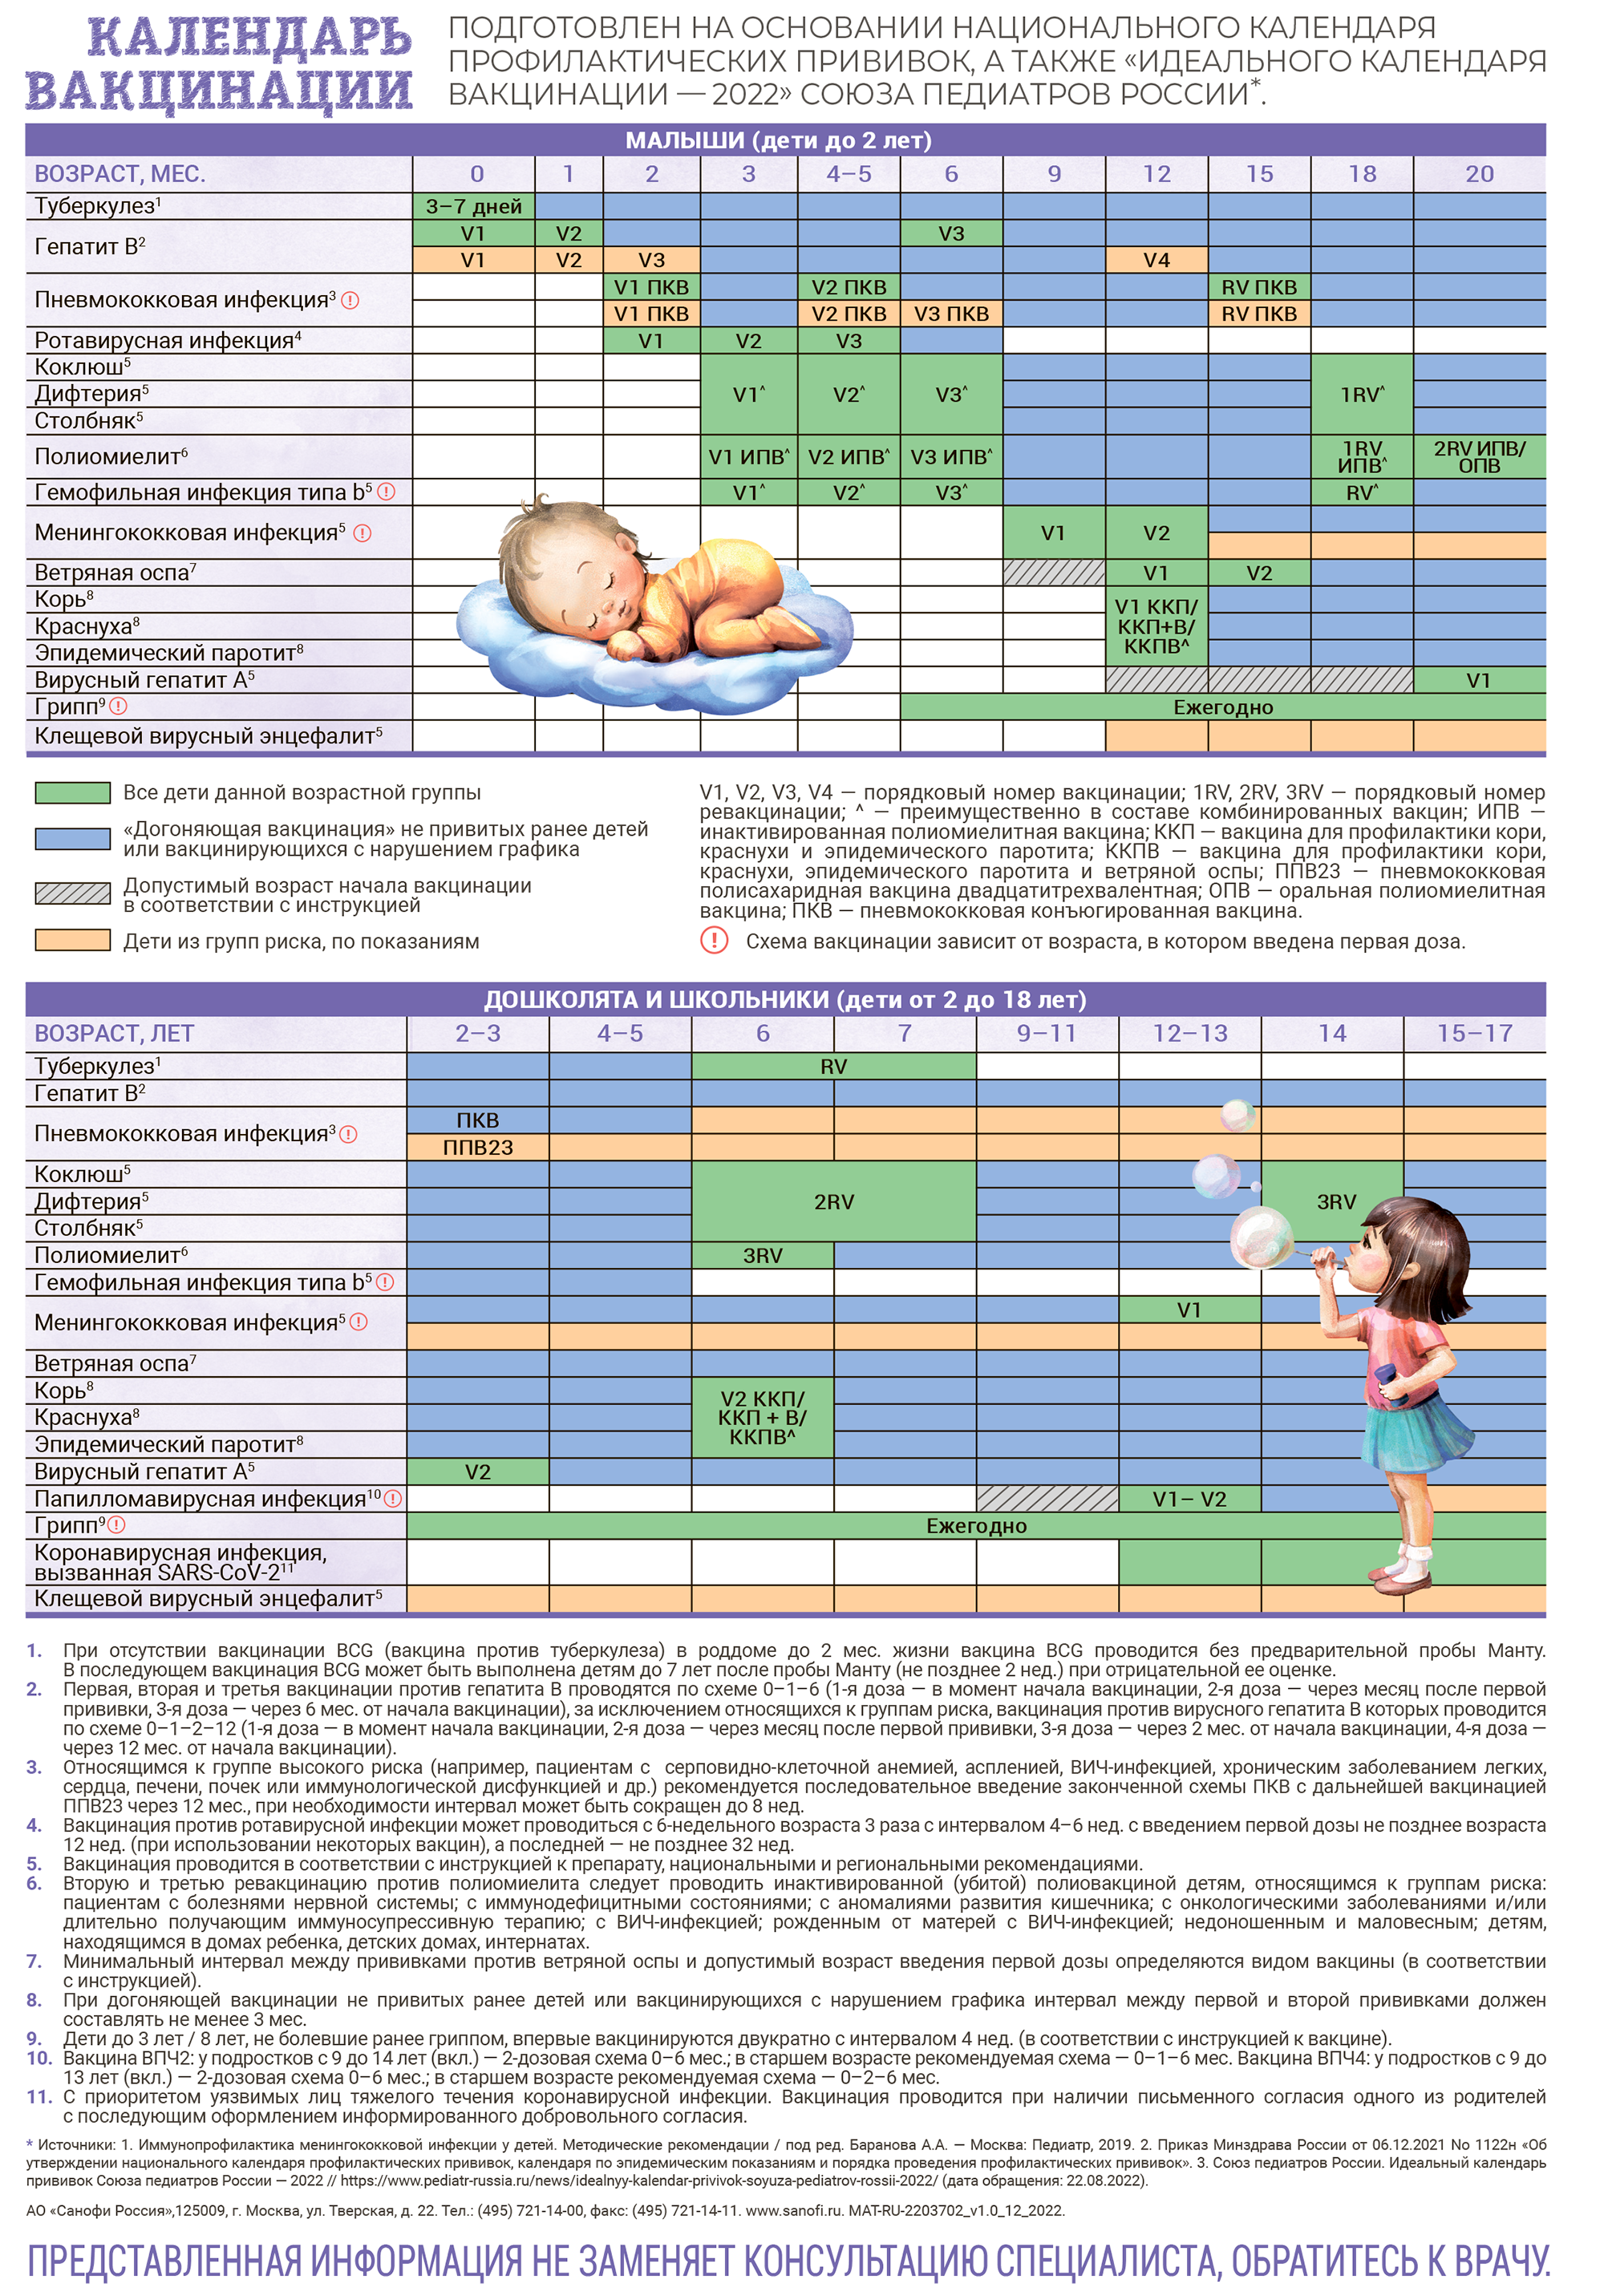 Национальный календарь профилактических прививок 2023